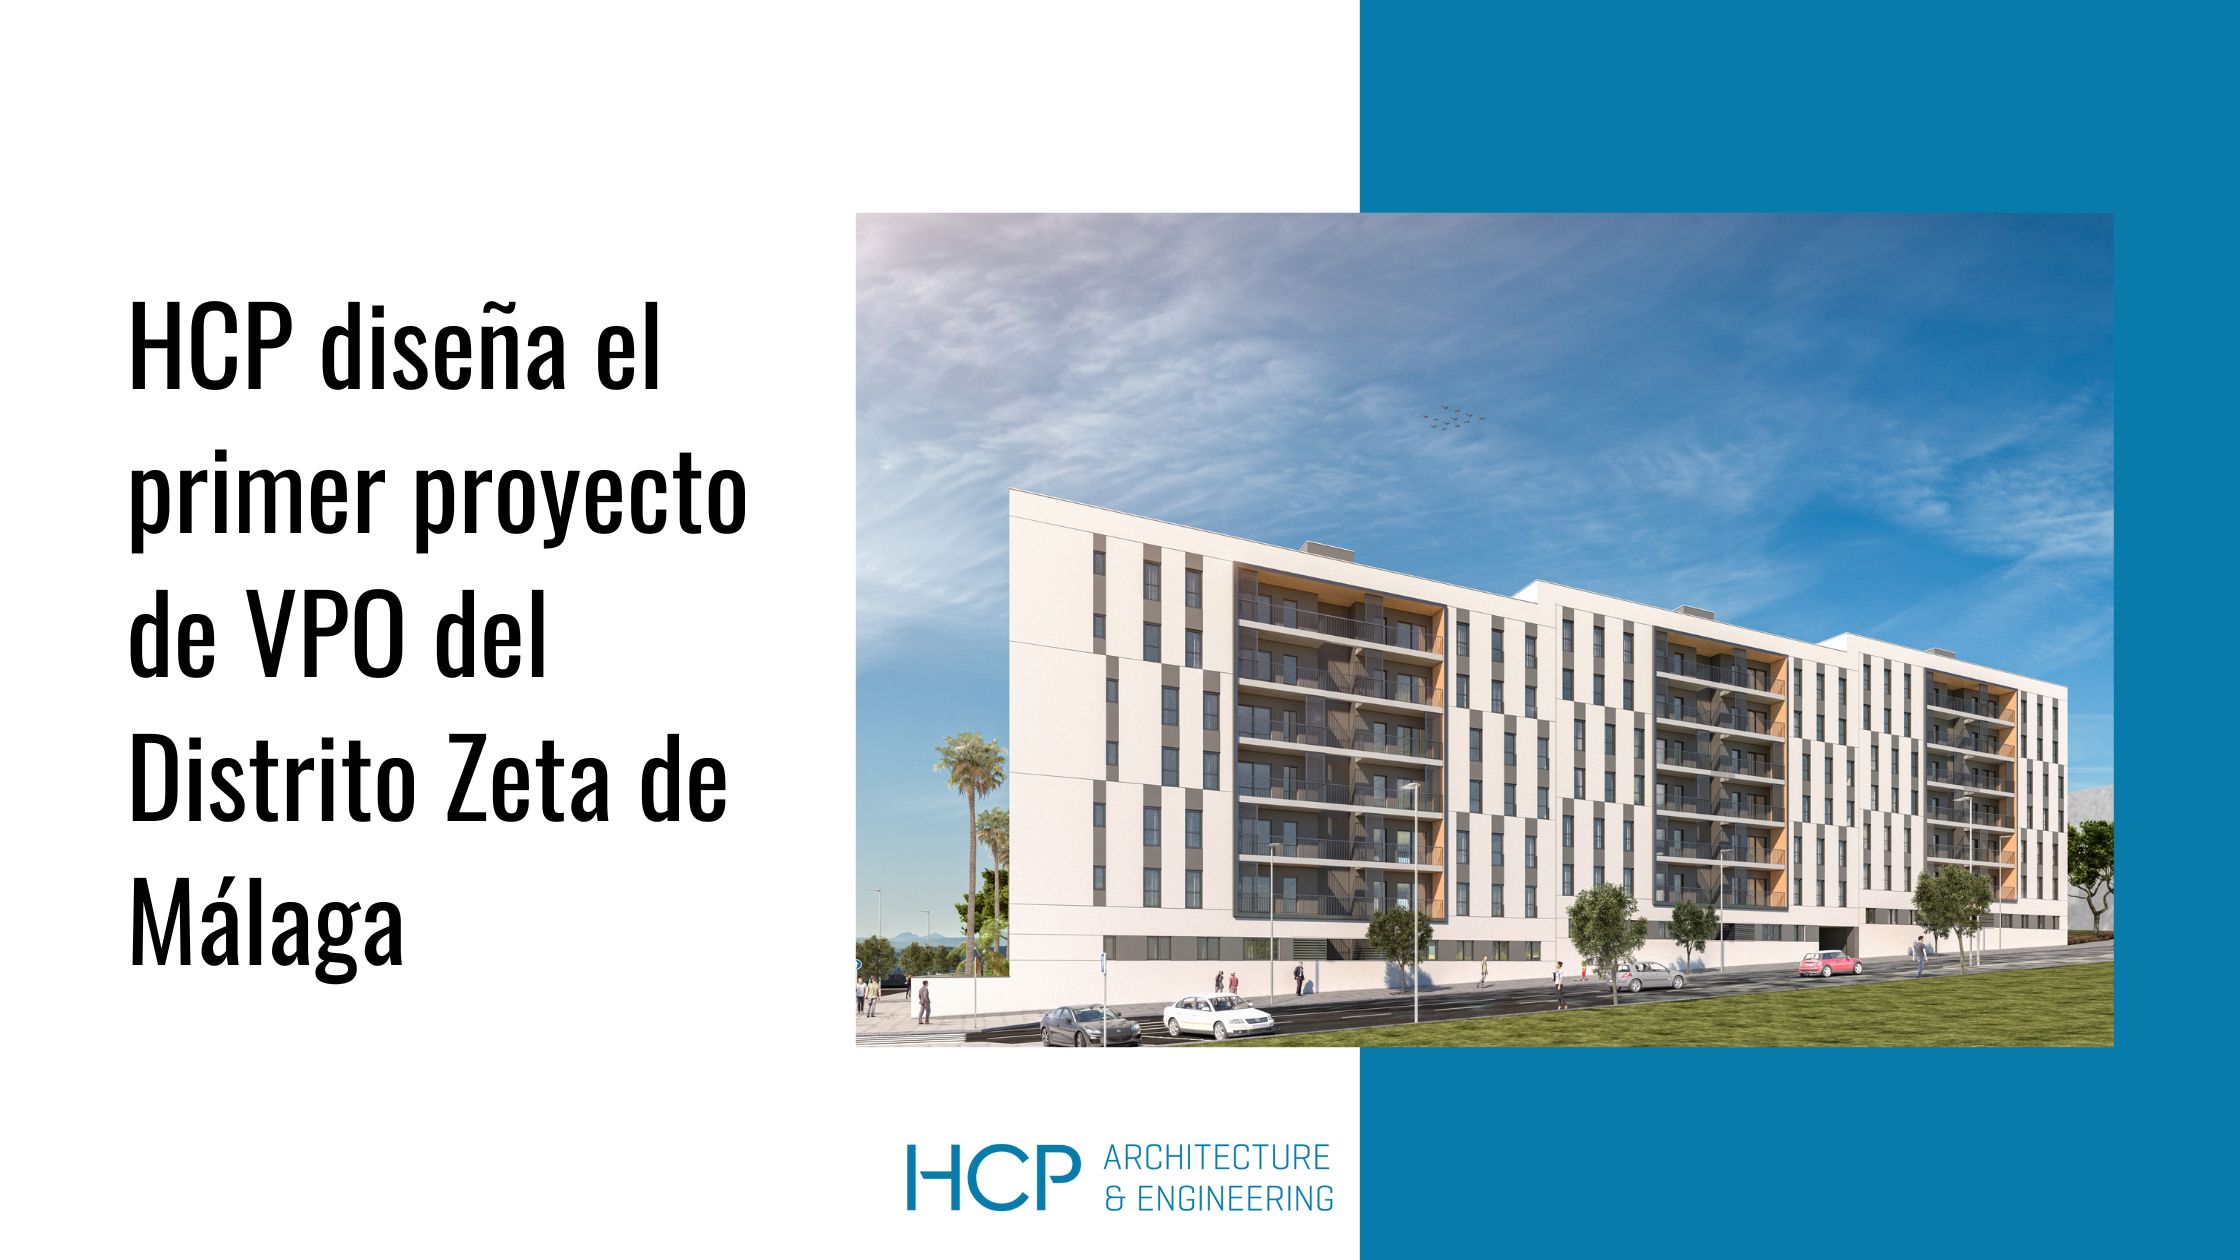 El estudio de arquitectura HCP diseña el primer proyecto de VPO del Distrito Zeta de Málaga